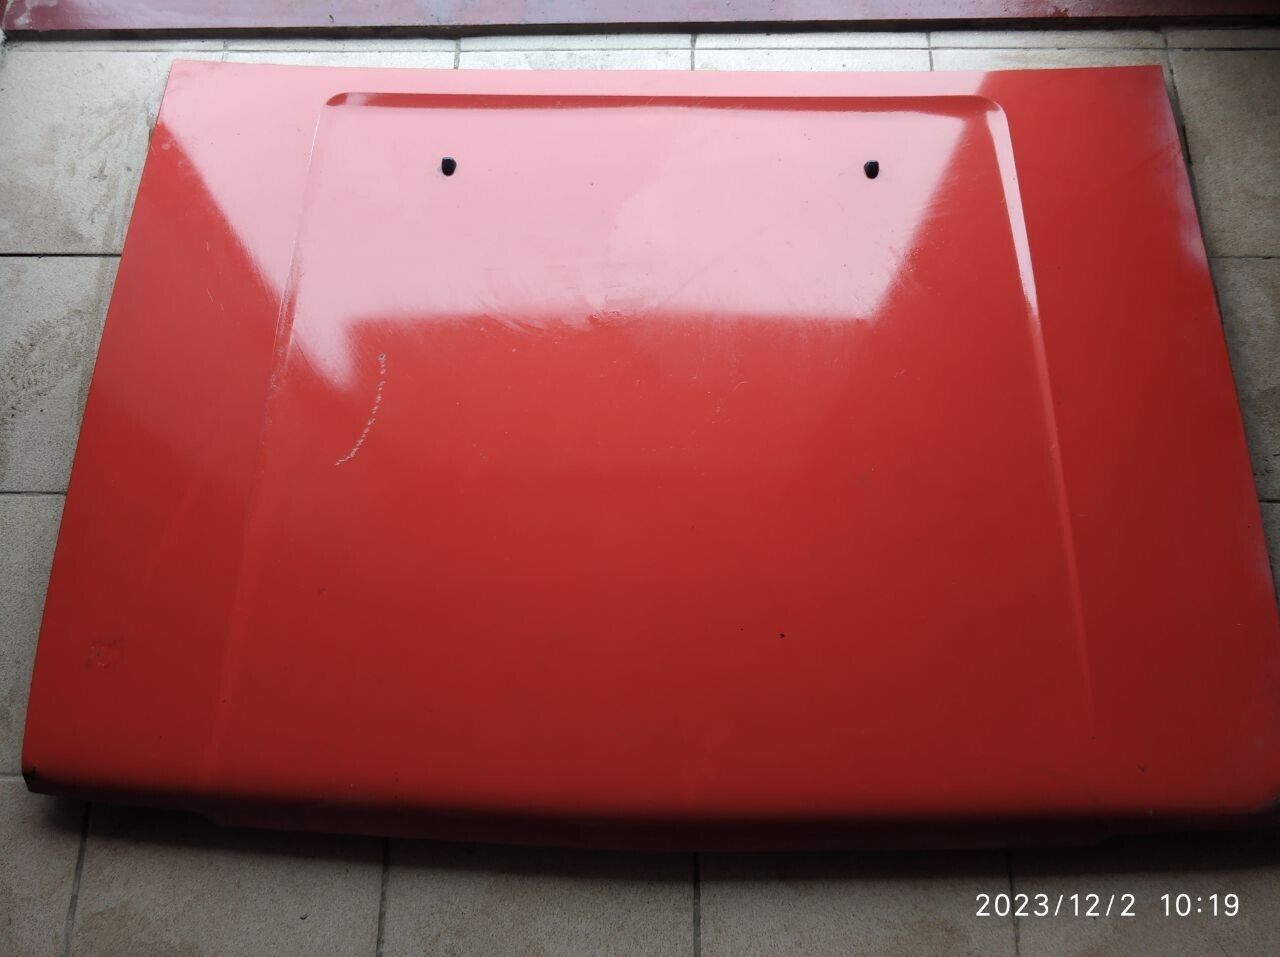 Toyota Starlet 1984 / Hatchback / 4K. Red hood for Sale.